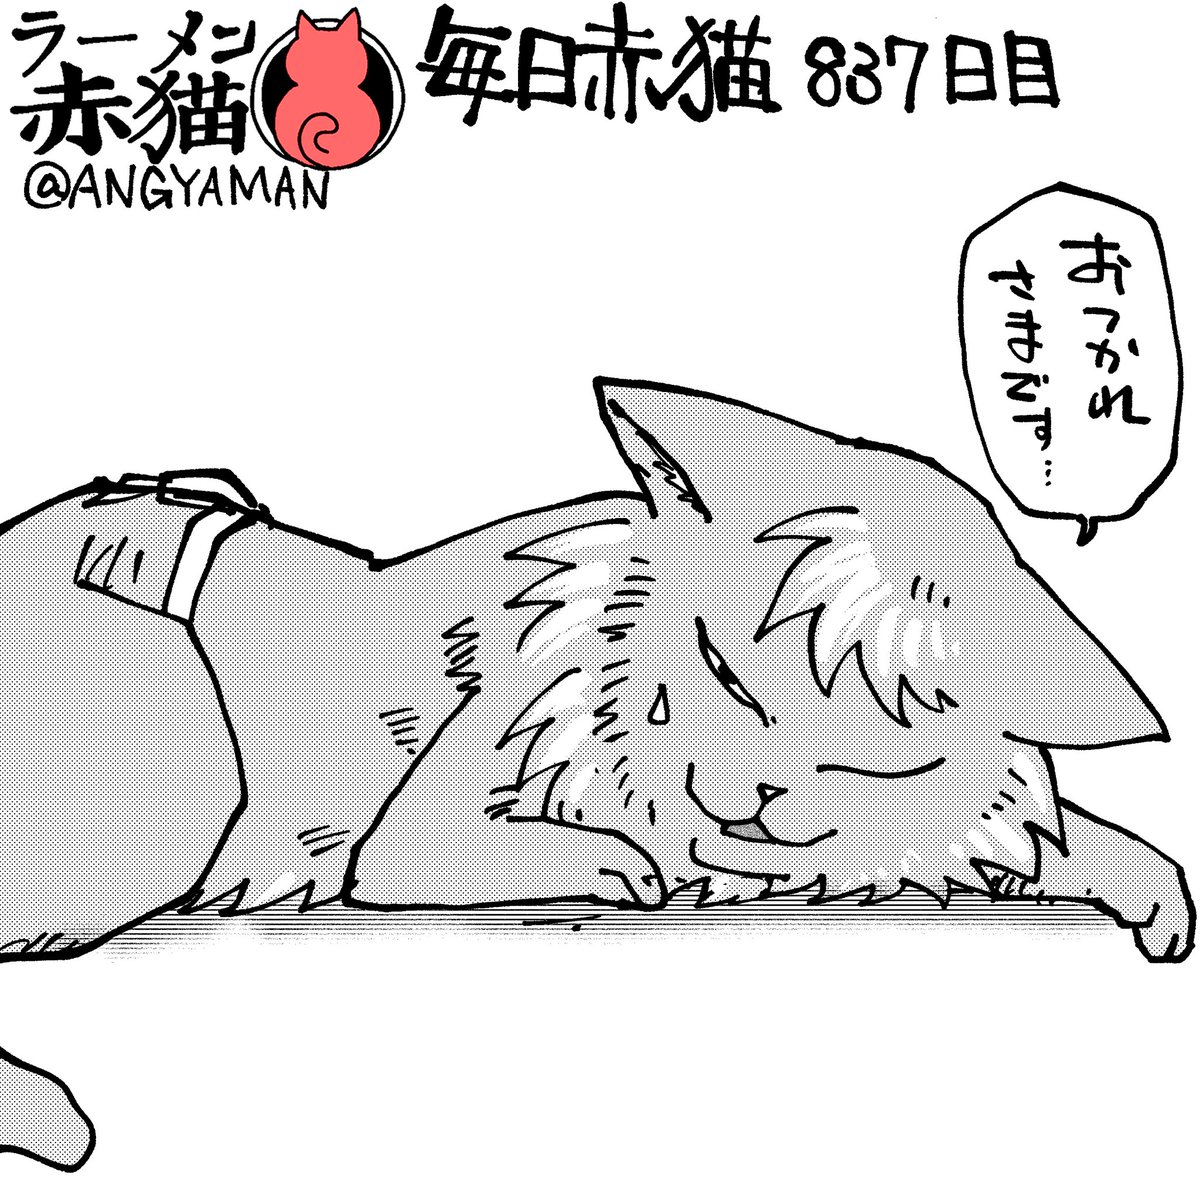 へとへとジュエル
#ラーメン赤猫　#ジャンププラス
99話　shonenjumpplus.com/app/viewer/ec1…